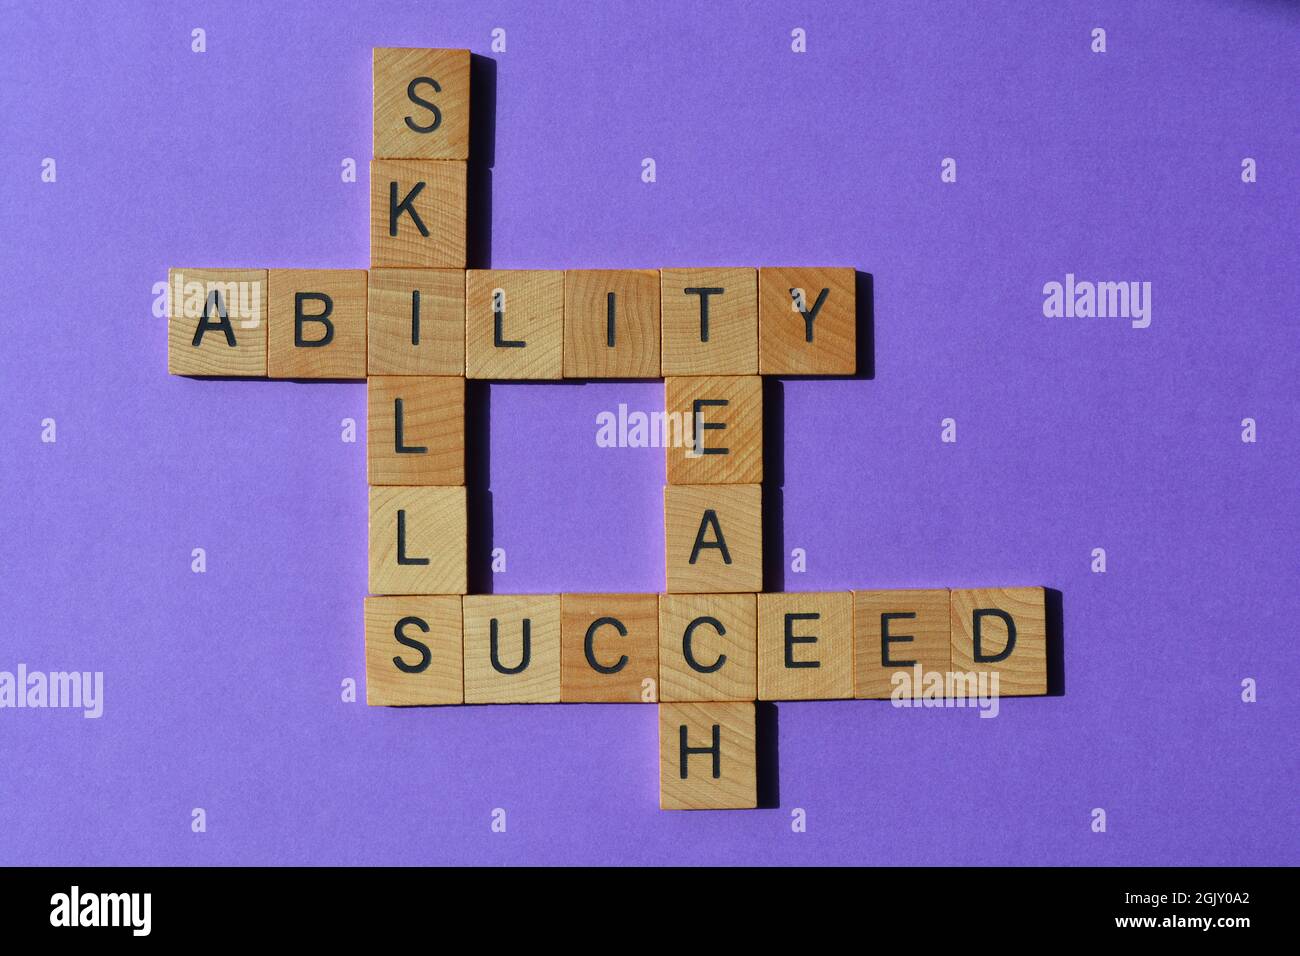 Habilidades, habilidad, enseñar, tener éxito, palabras en letras del alfabeto de madera en forma de crucigrama aisladas sobre fondo púrpura Foto de stock